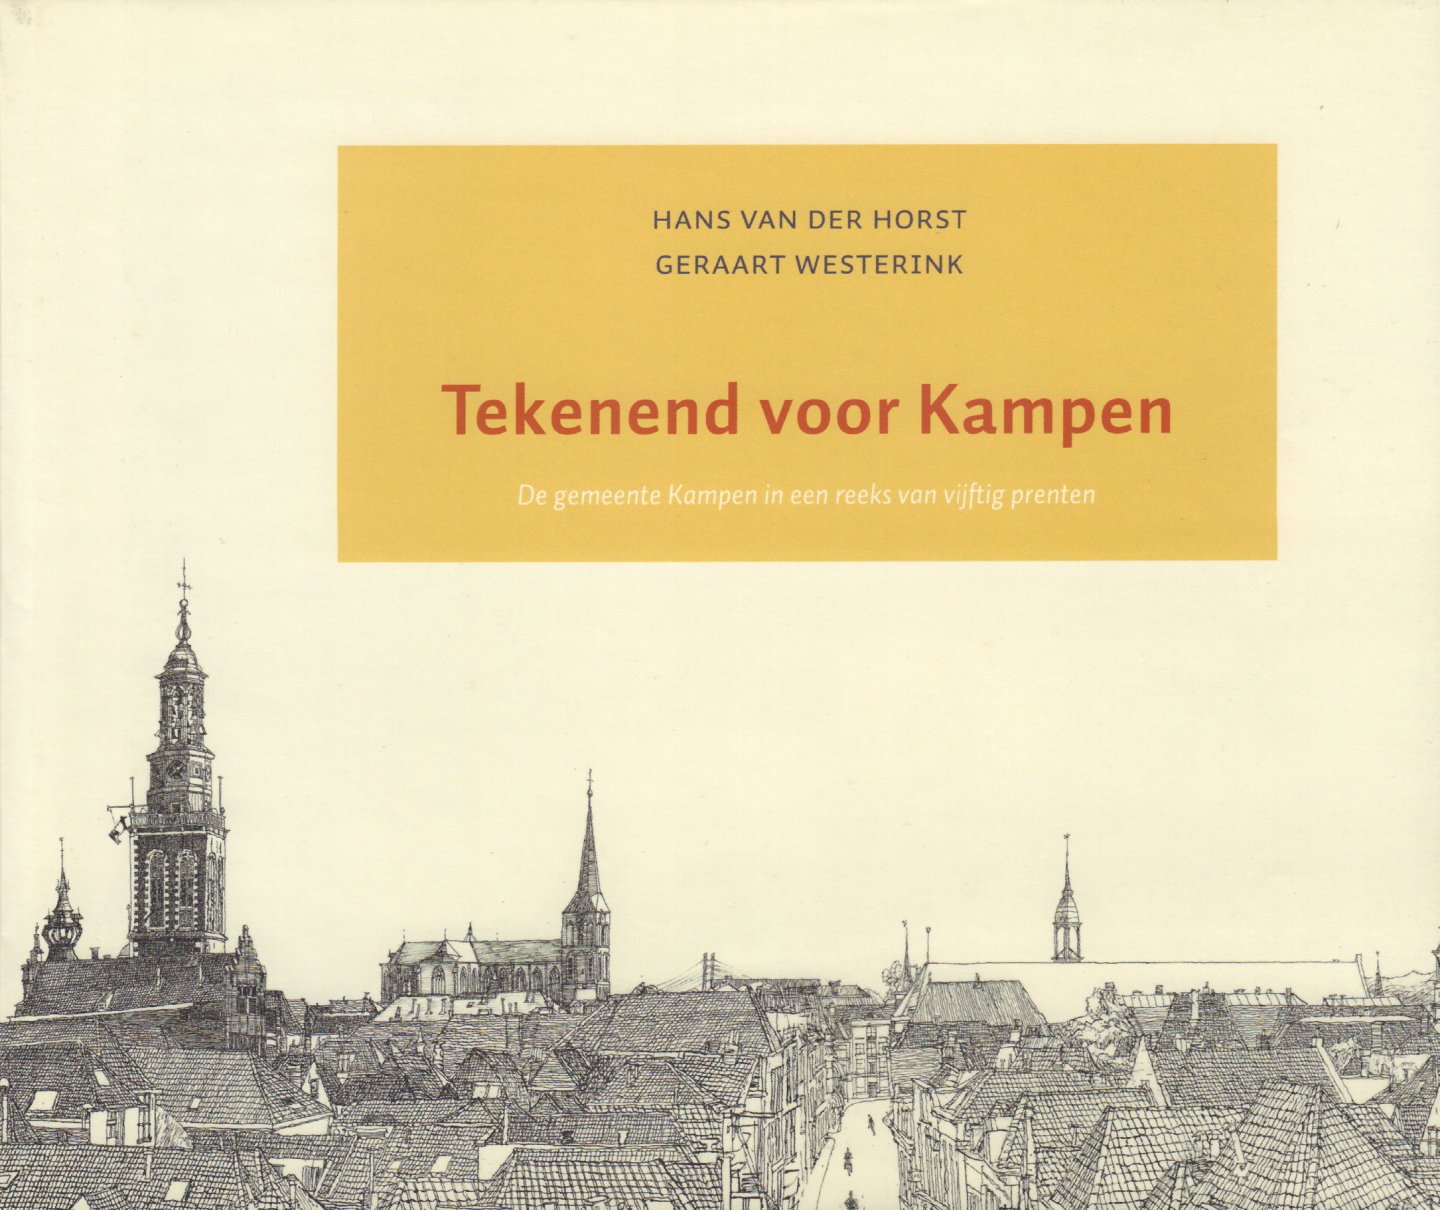 Horst, Hans van der en Gerraart Westerink - Tekenend voor Kampen (De gemeente Kampen in een reeks van vijftig prenten), 124 pag. hardcover + stofomslag, gave staat